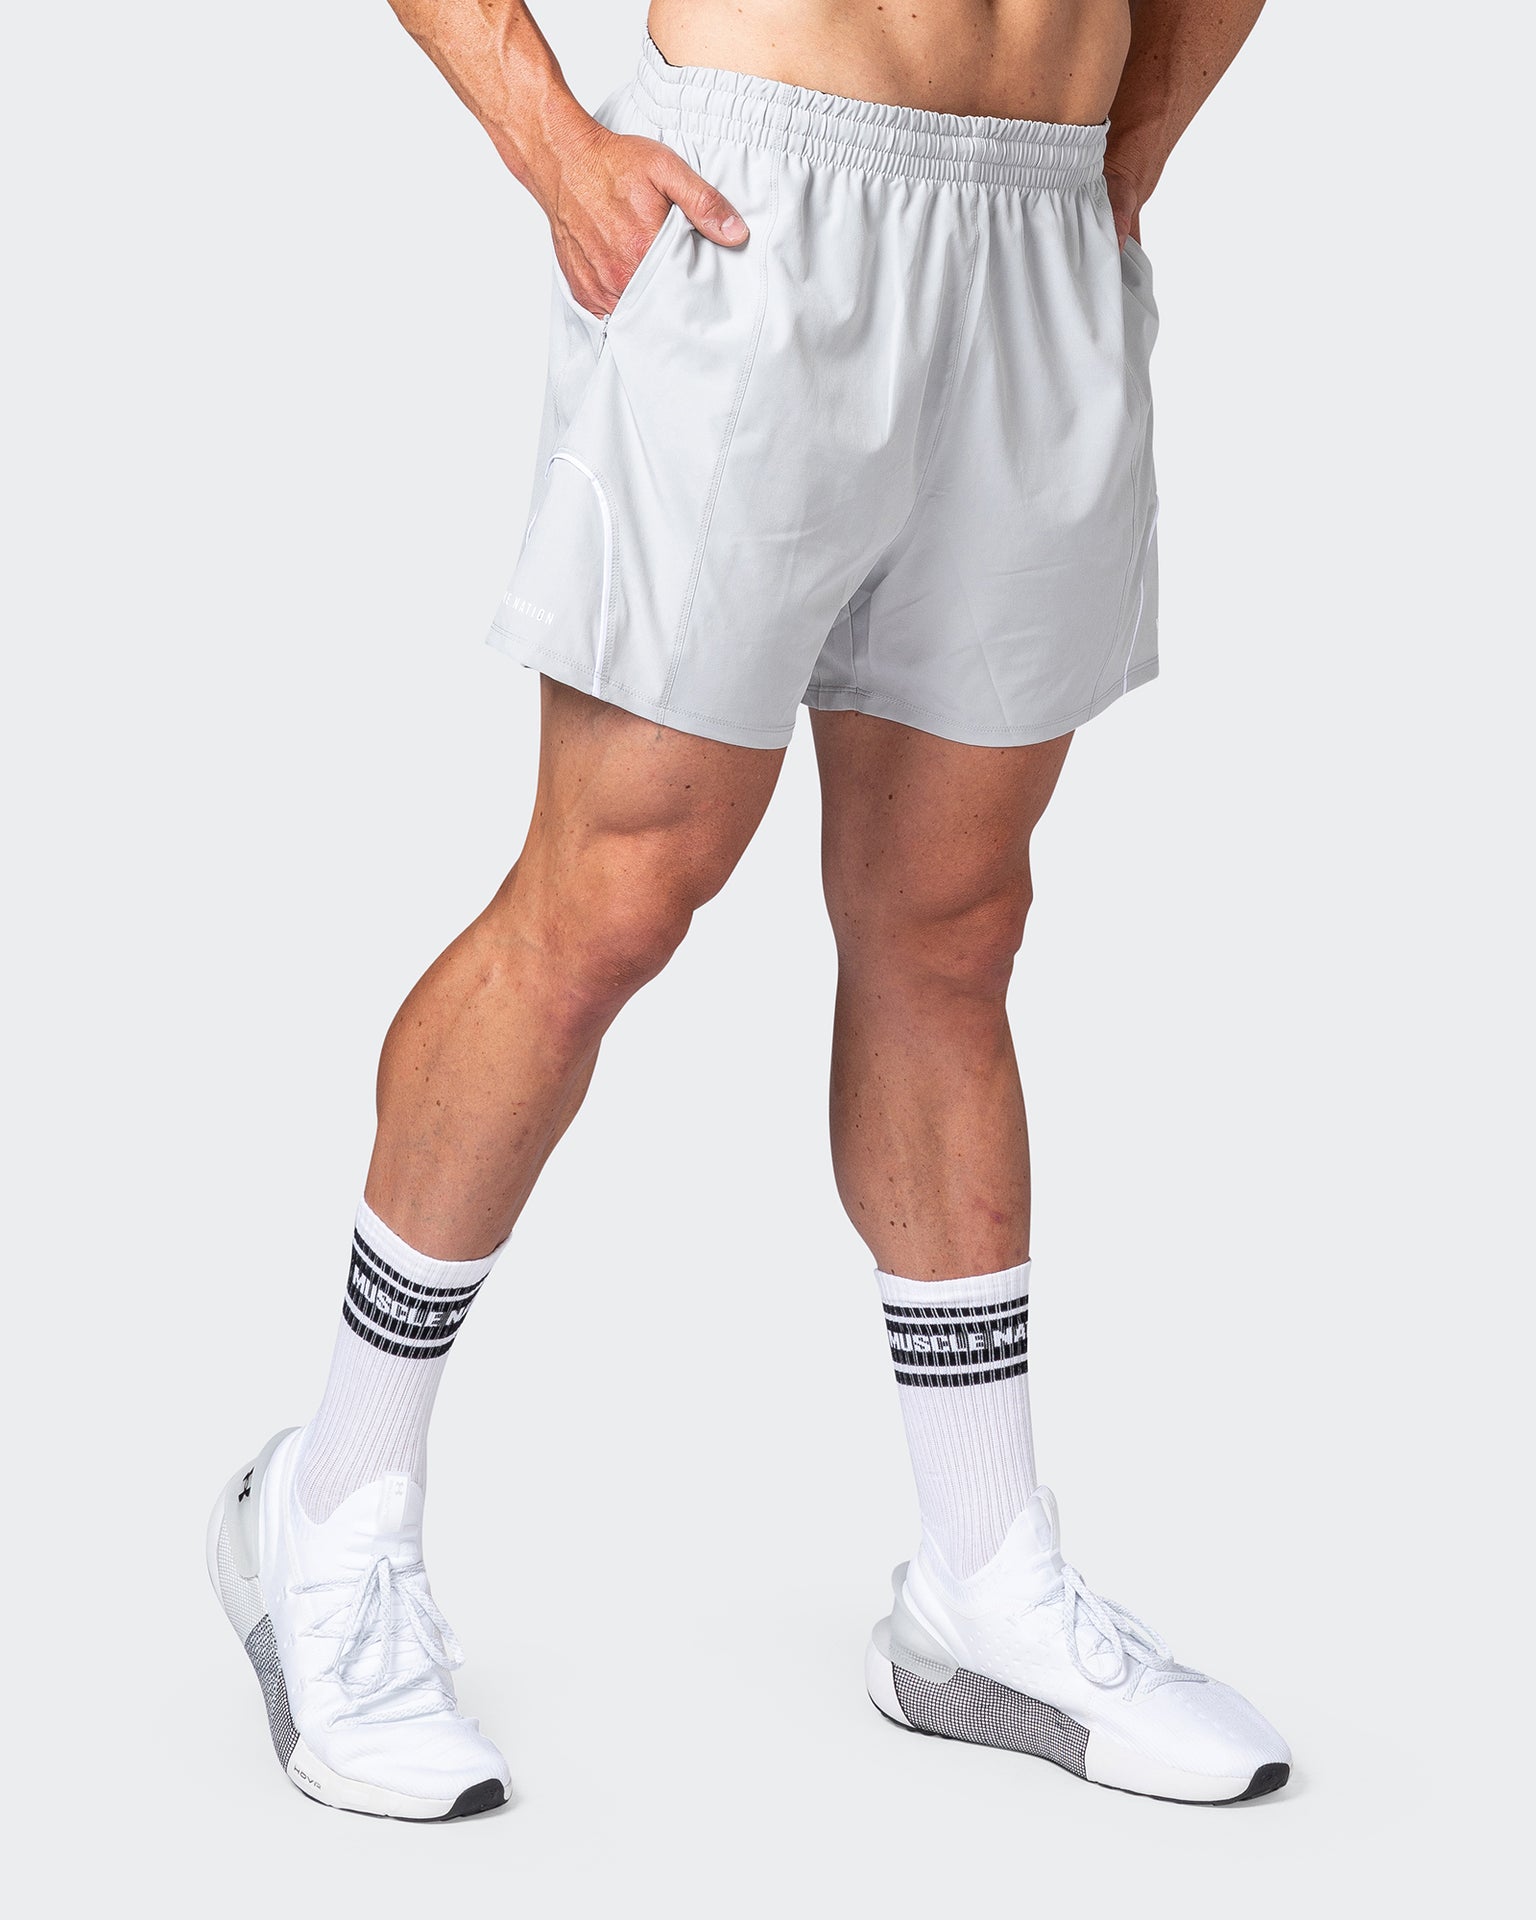 Deuce Performance Underwear  Solid White – Deuce Brand